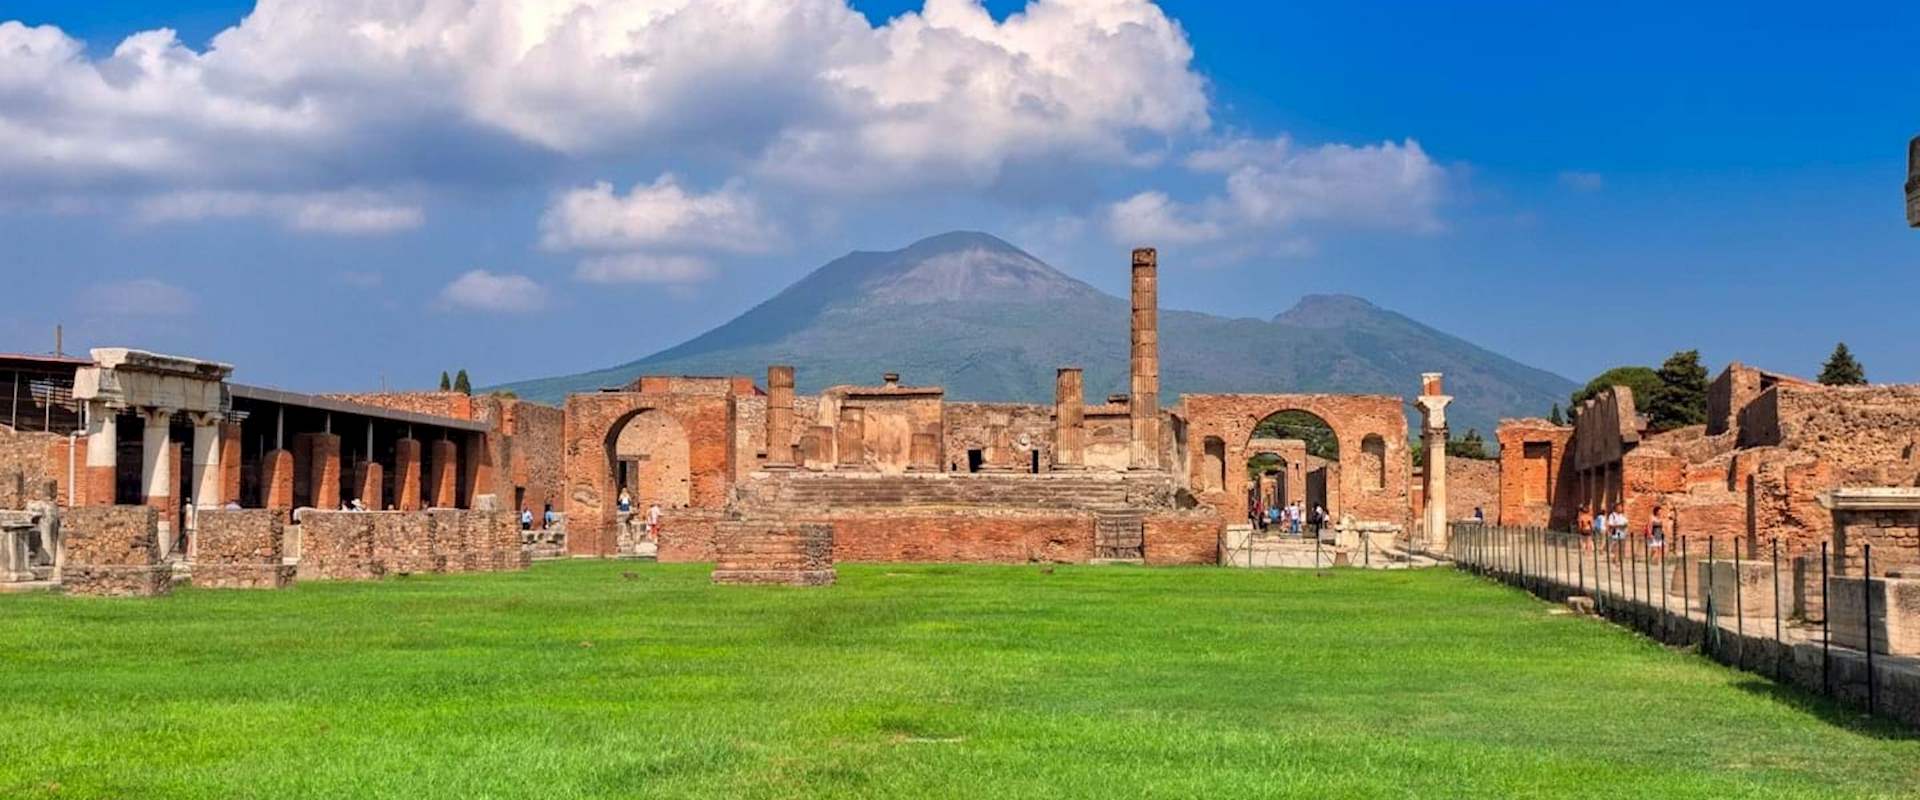 pompeii tour from sorrento